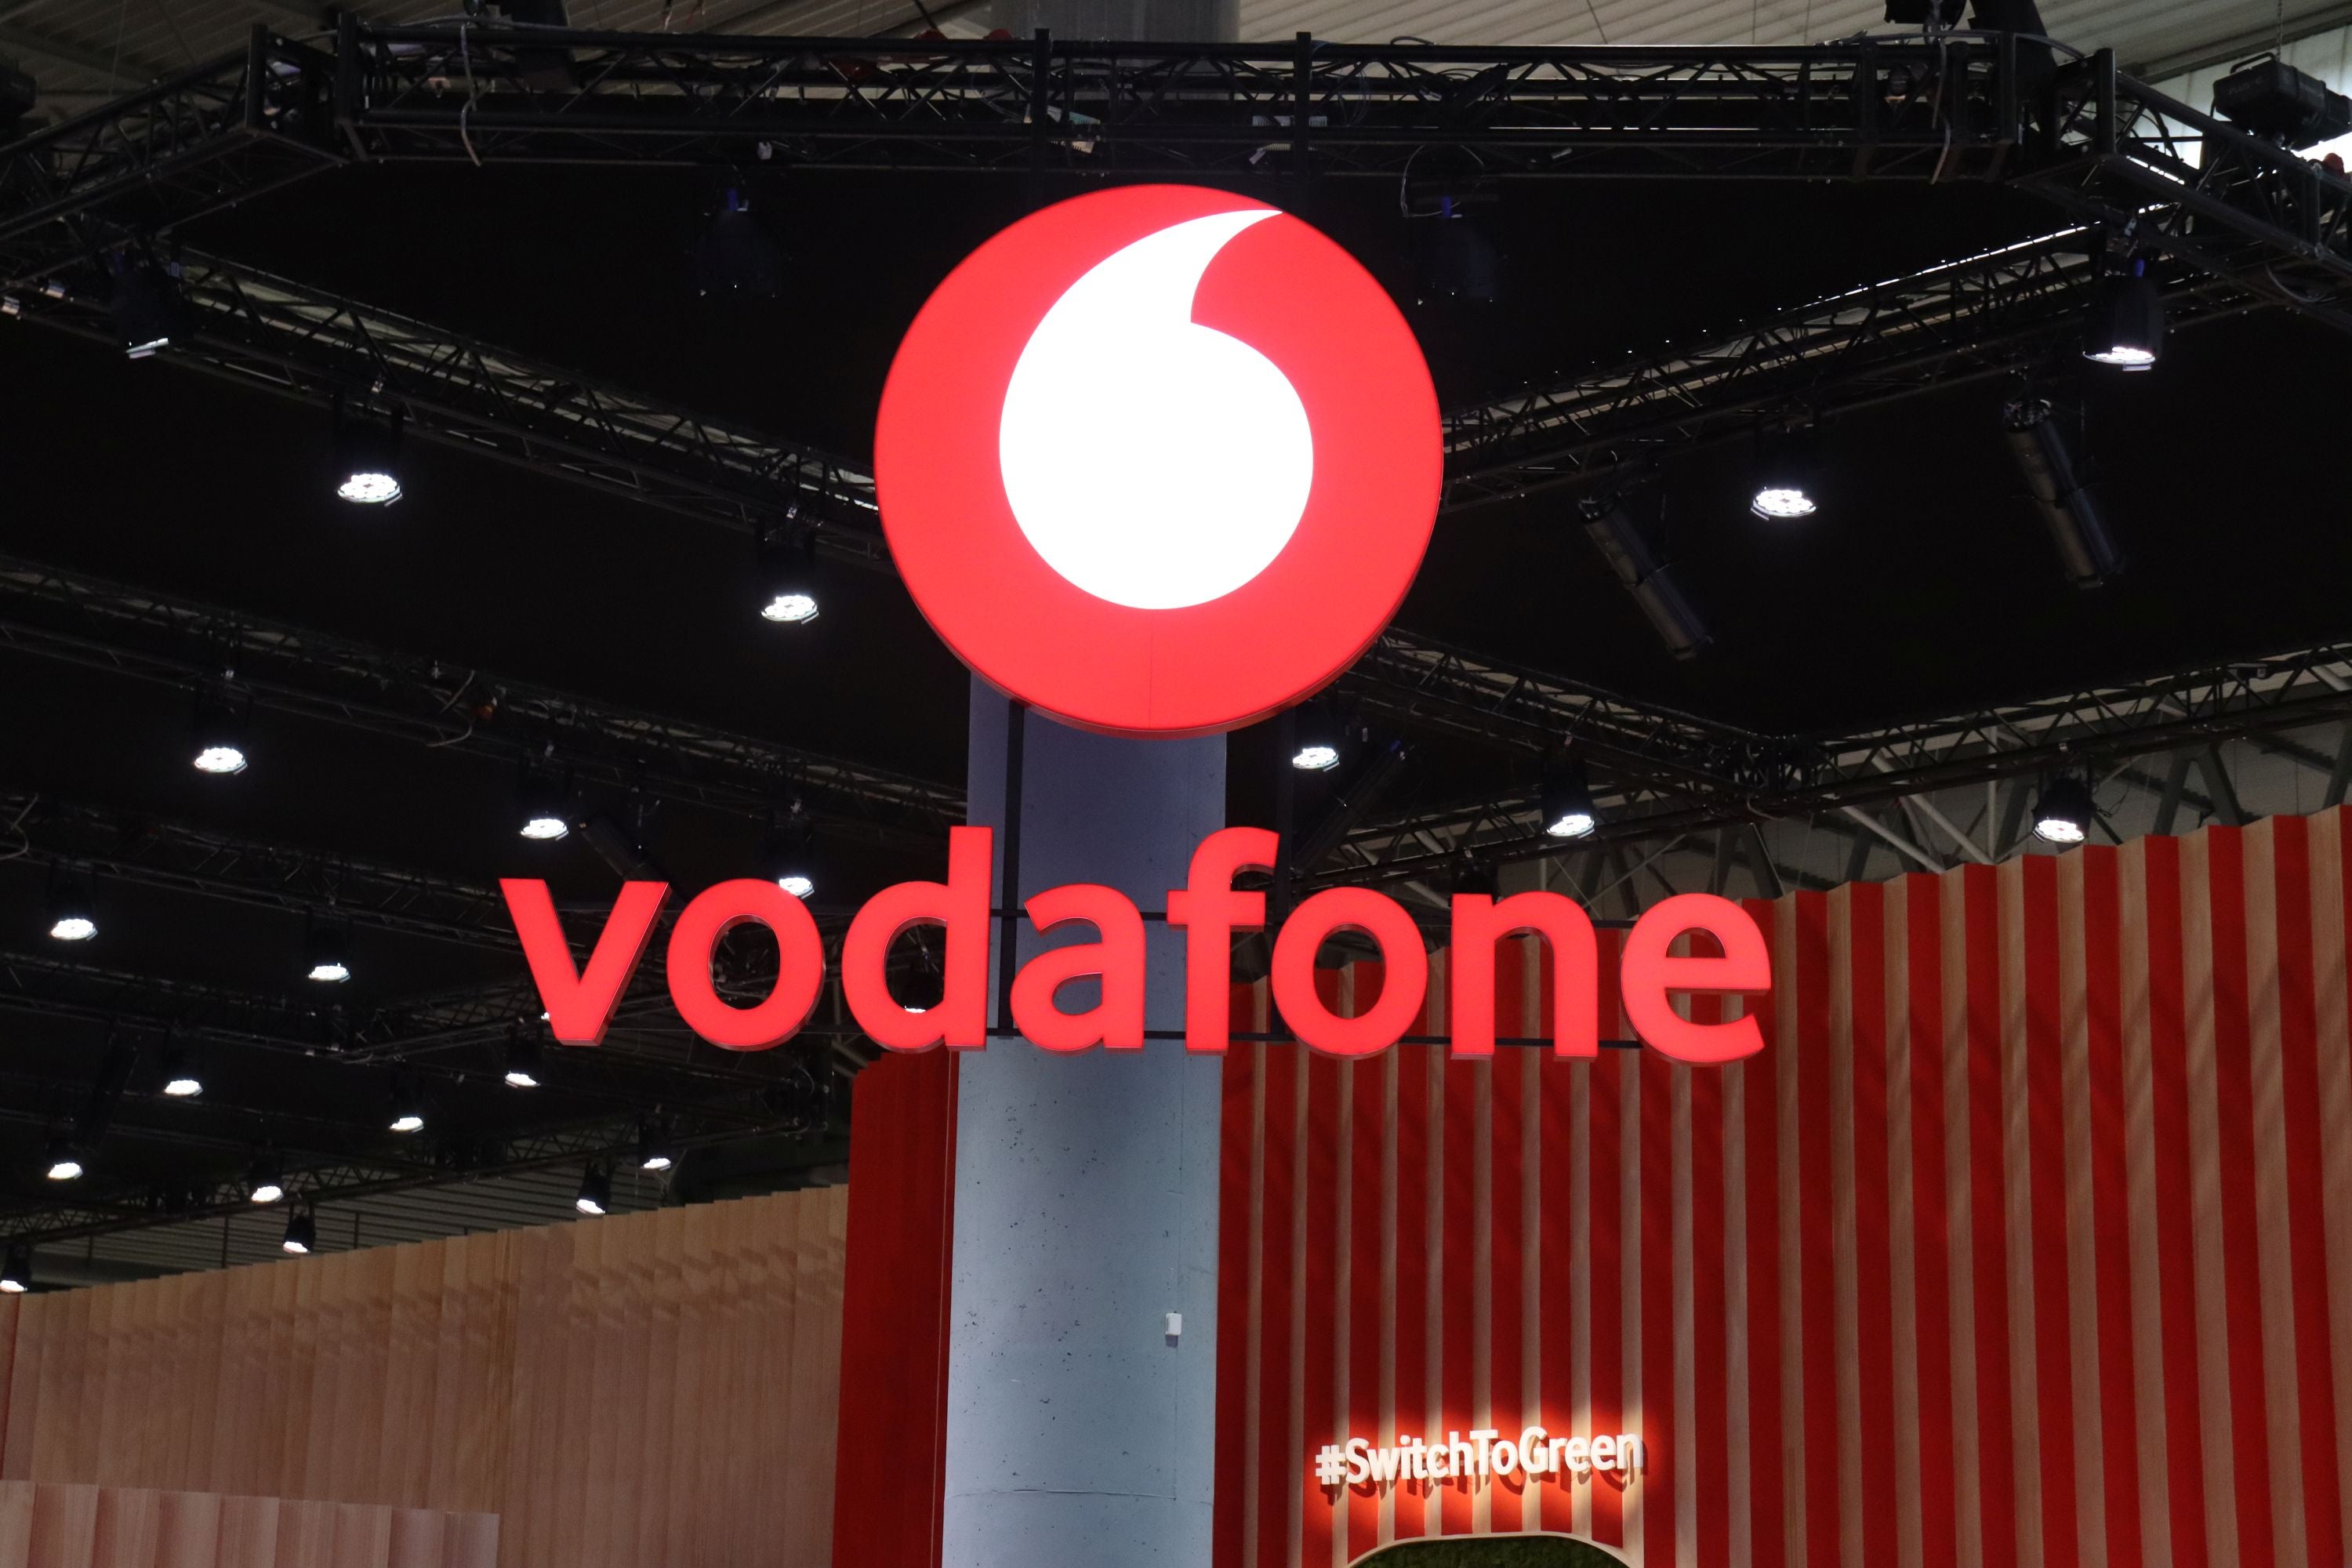 #Vodafone: Dieser Tarif wird eingestellt – letzte Chance für günstiges Internet